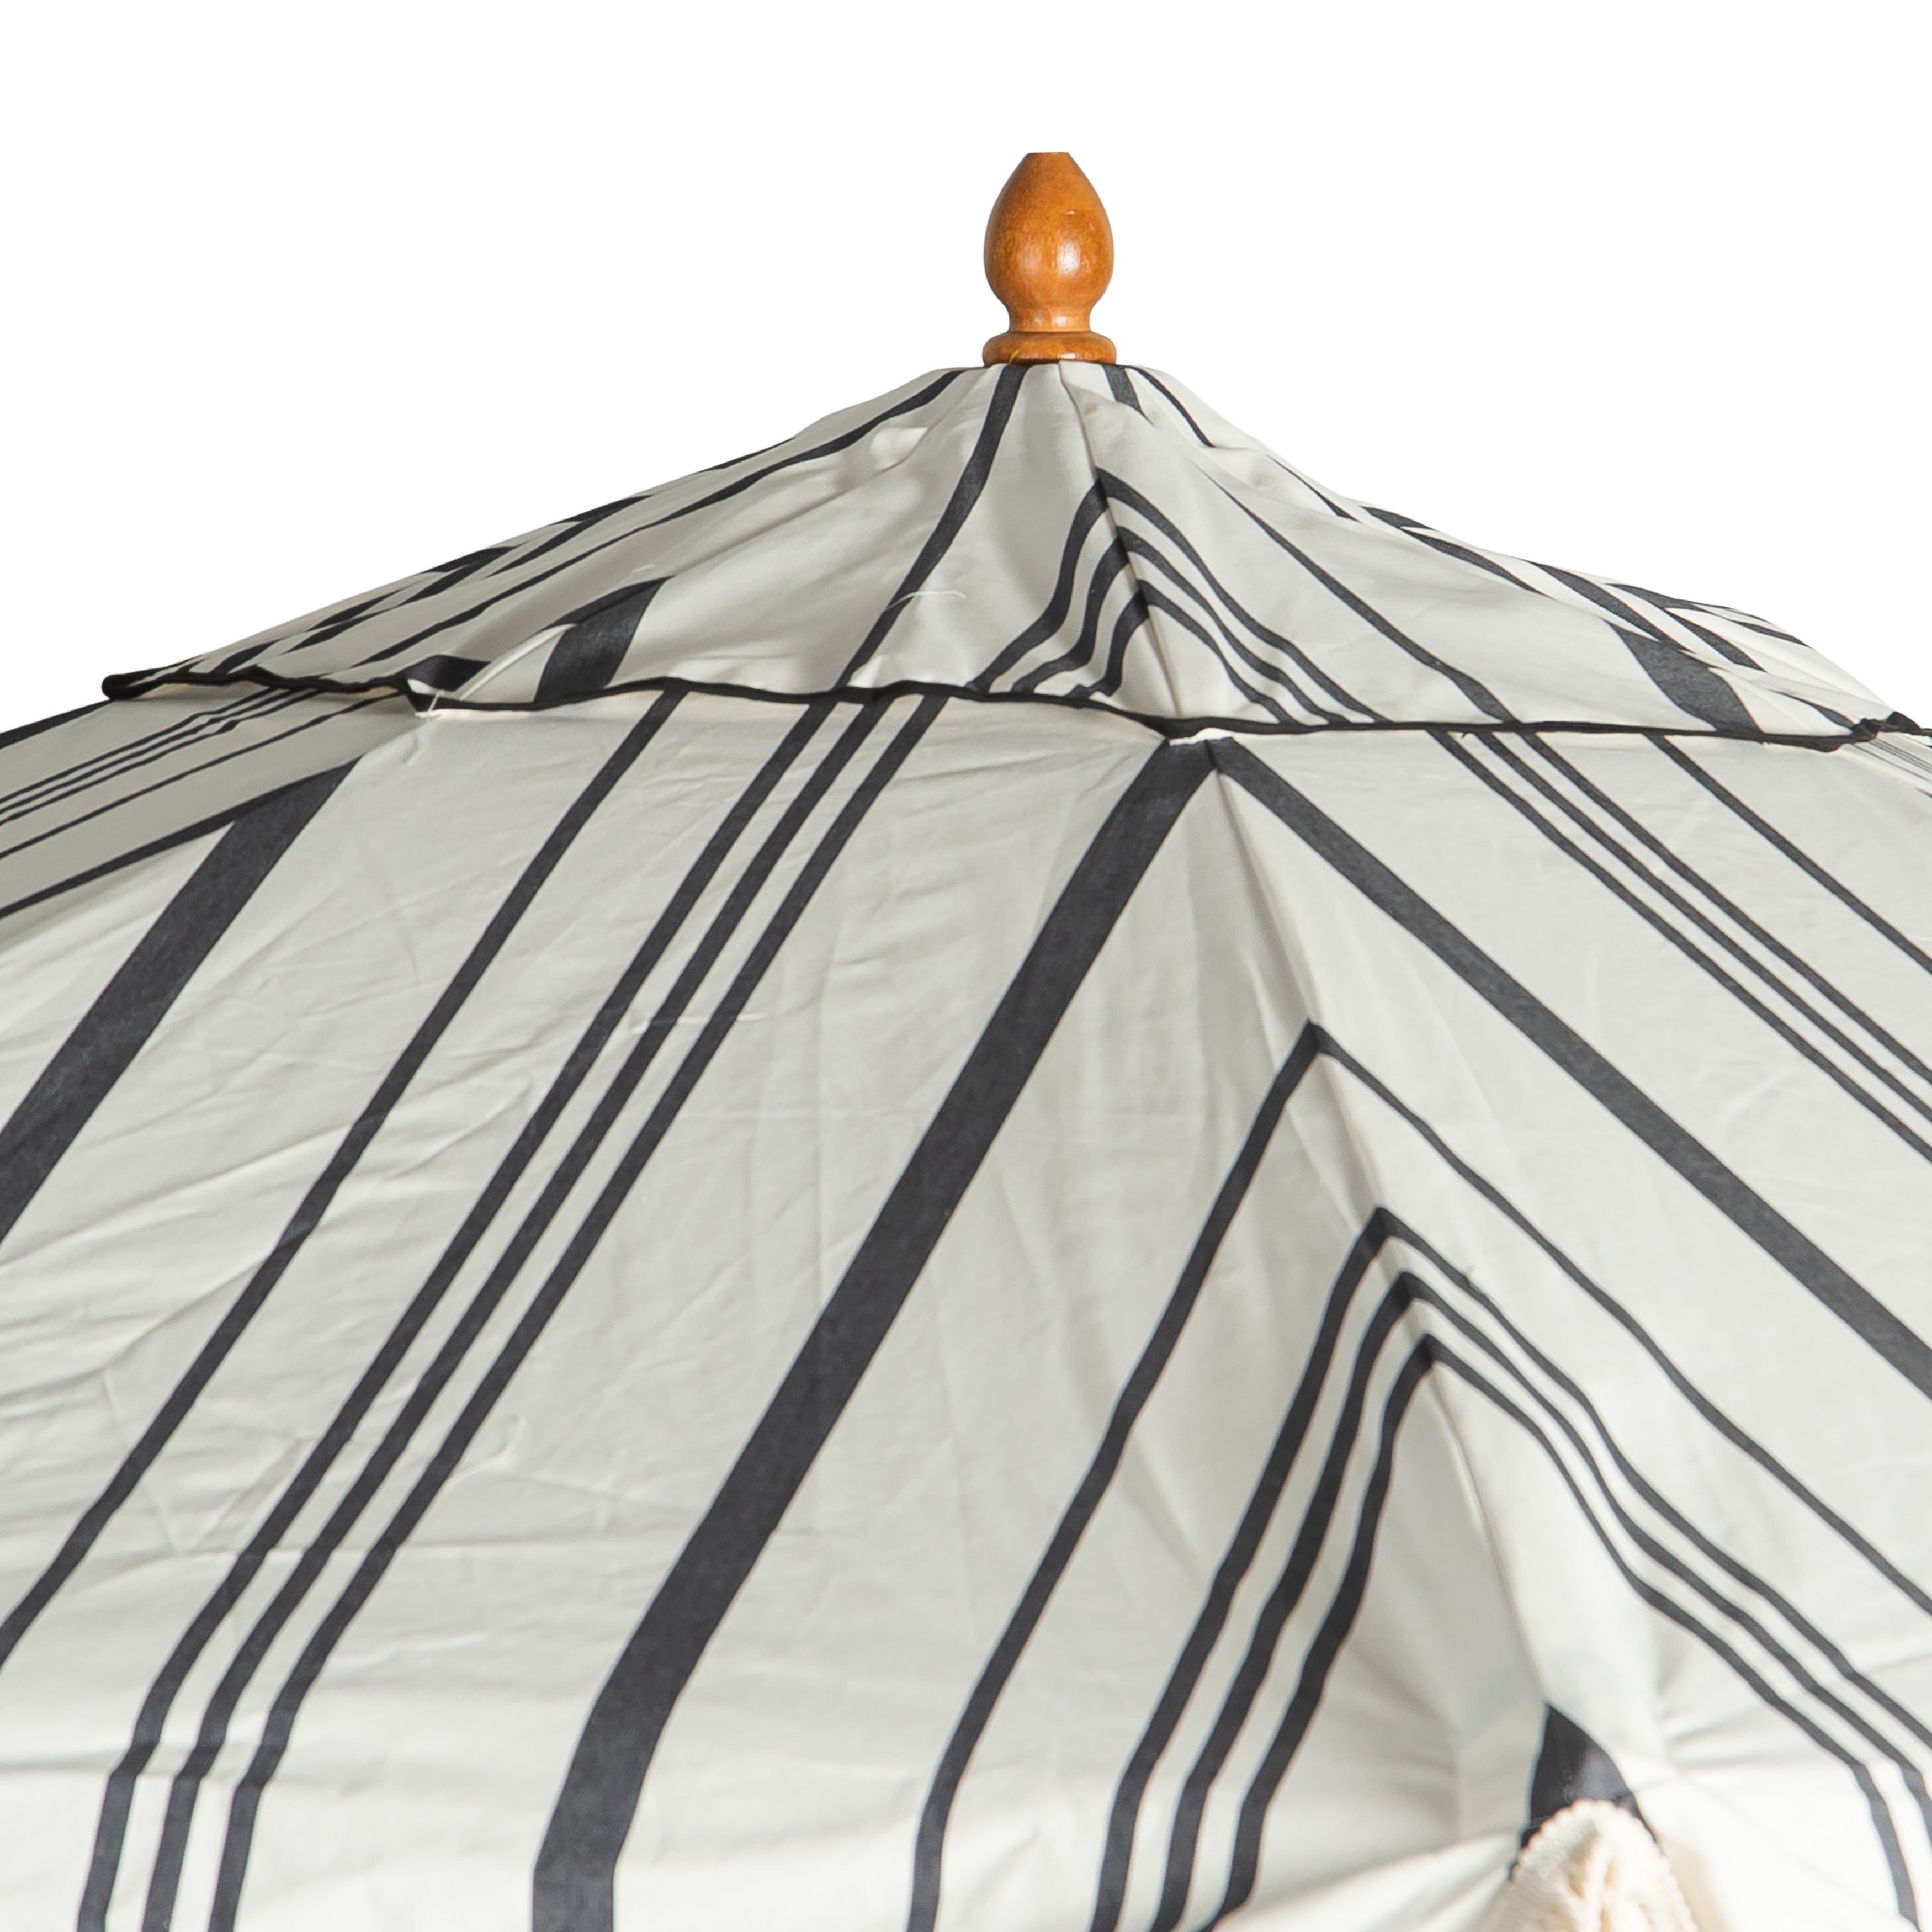 Sunny Grande Black Striped Umbrella